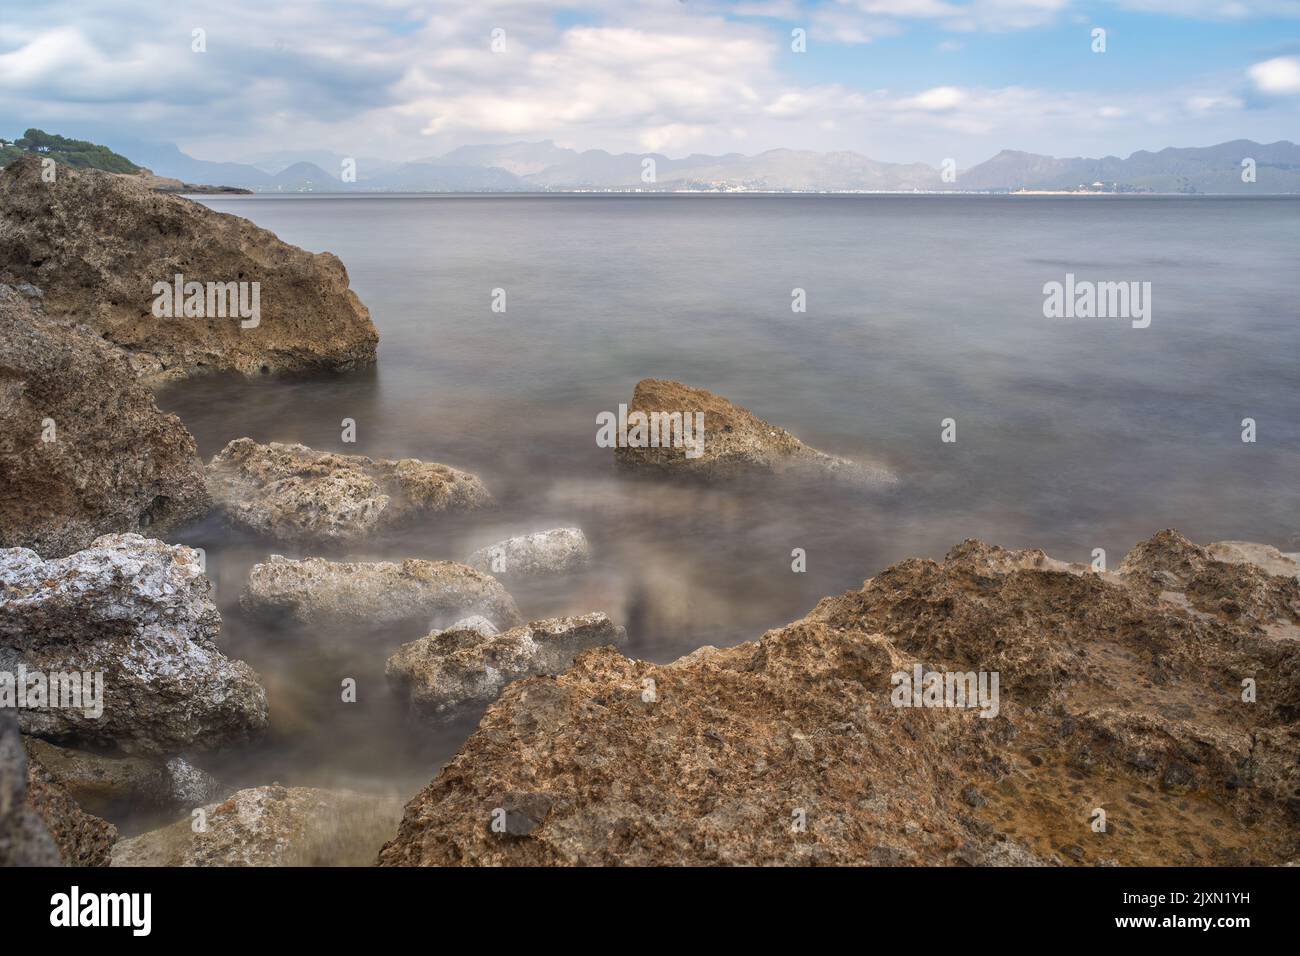 Ein schöner Blick auf das trübe Wasser des Strandes Cala Victoria, Spanien. Stockfoto